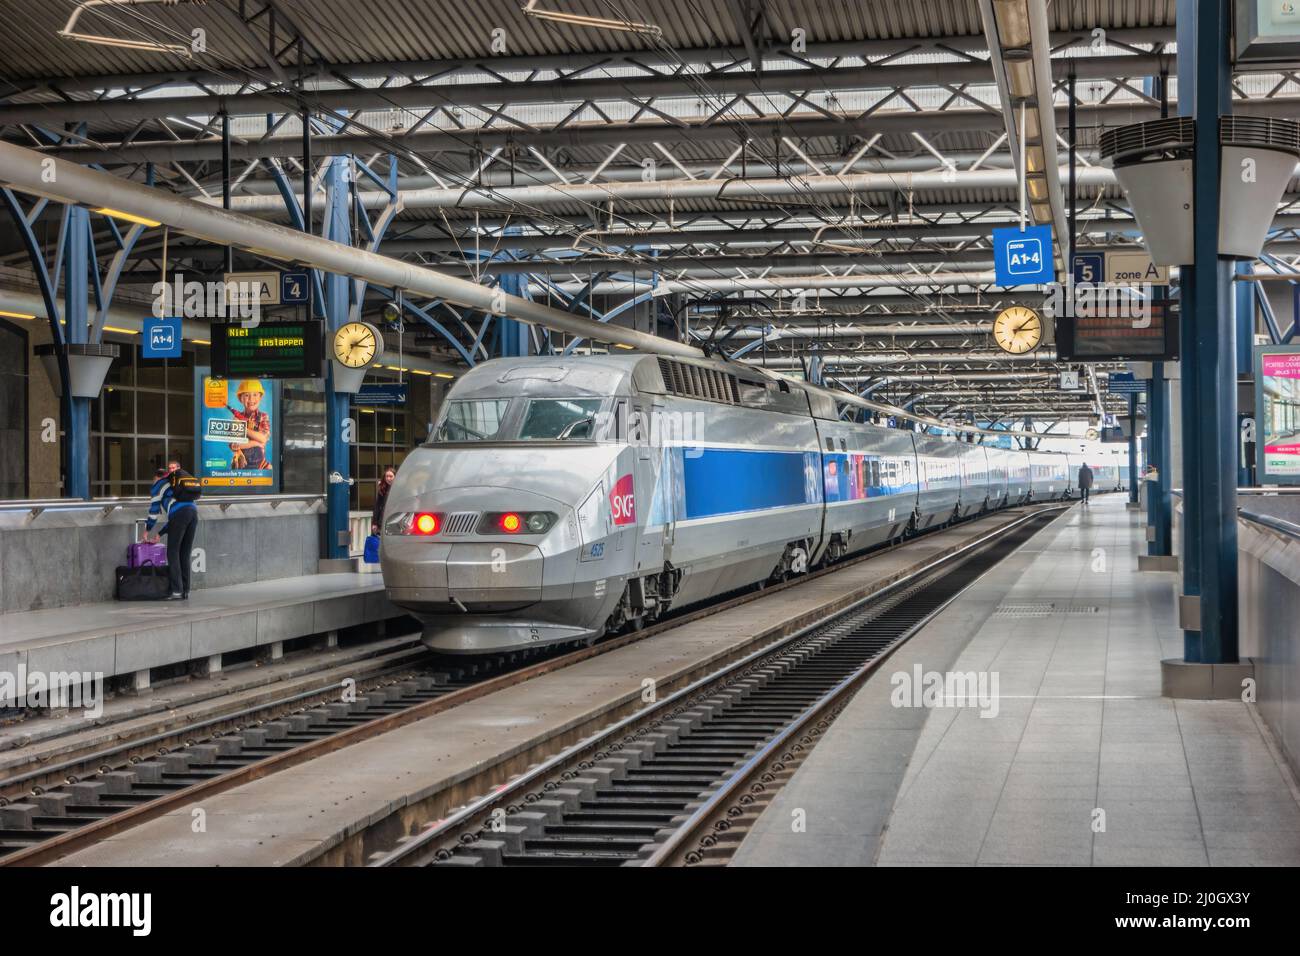 Bruxelles, Belgio - 8 maggio 2017: Treno ad alta velocità alla stazione ferroviaria di Bruxelles Sud (Bruxelles Midi) la stazione più grande della città di Bruxelles Foto Stock